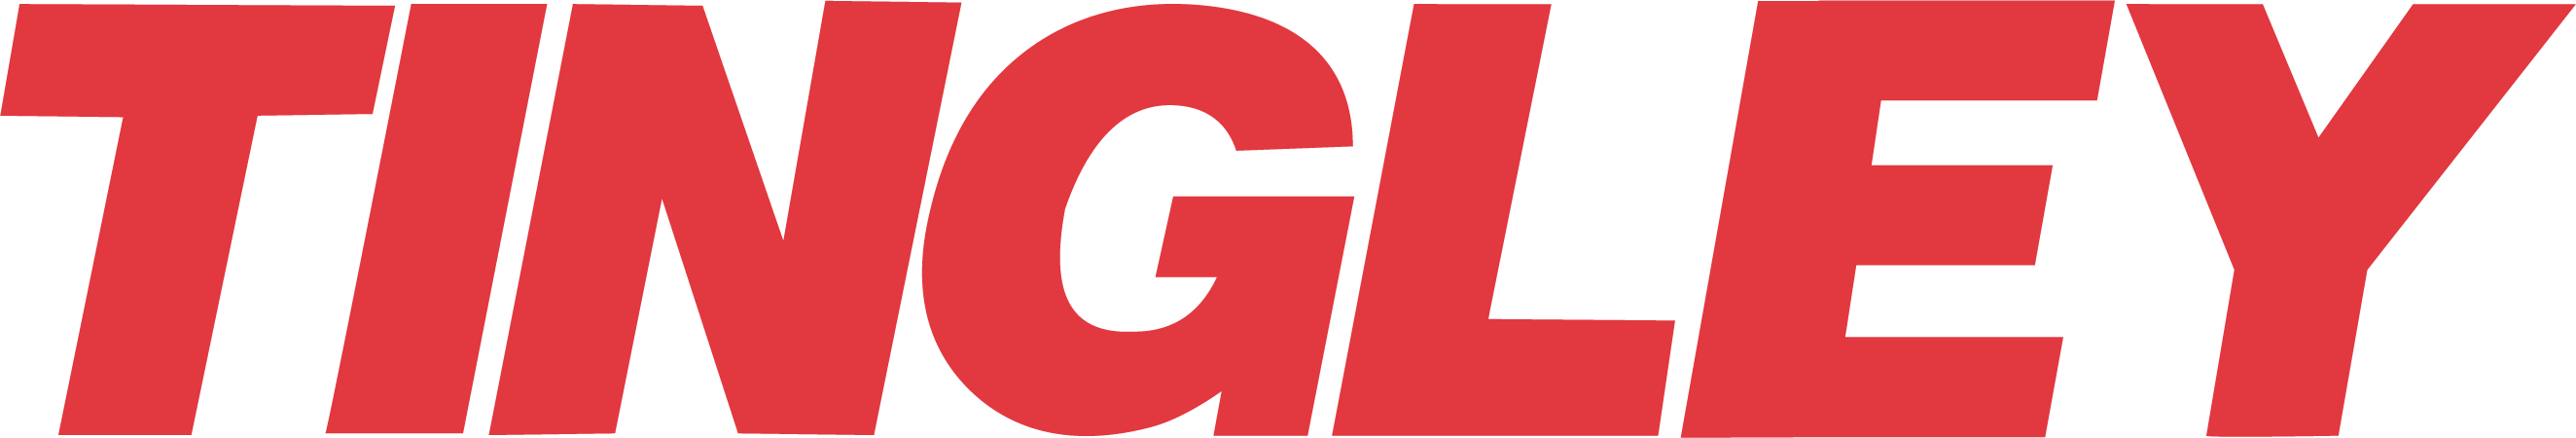 Tingley logo red